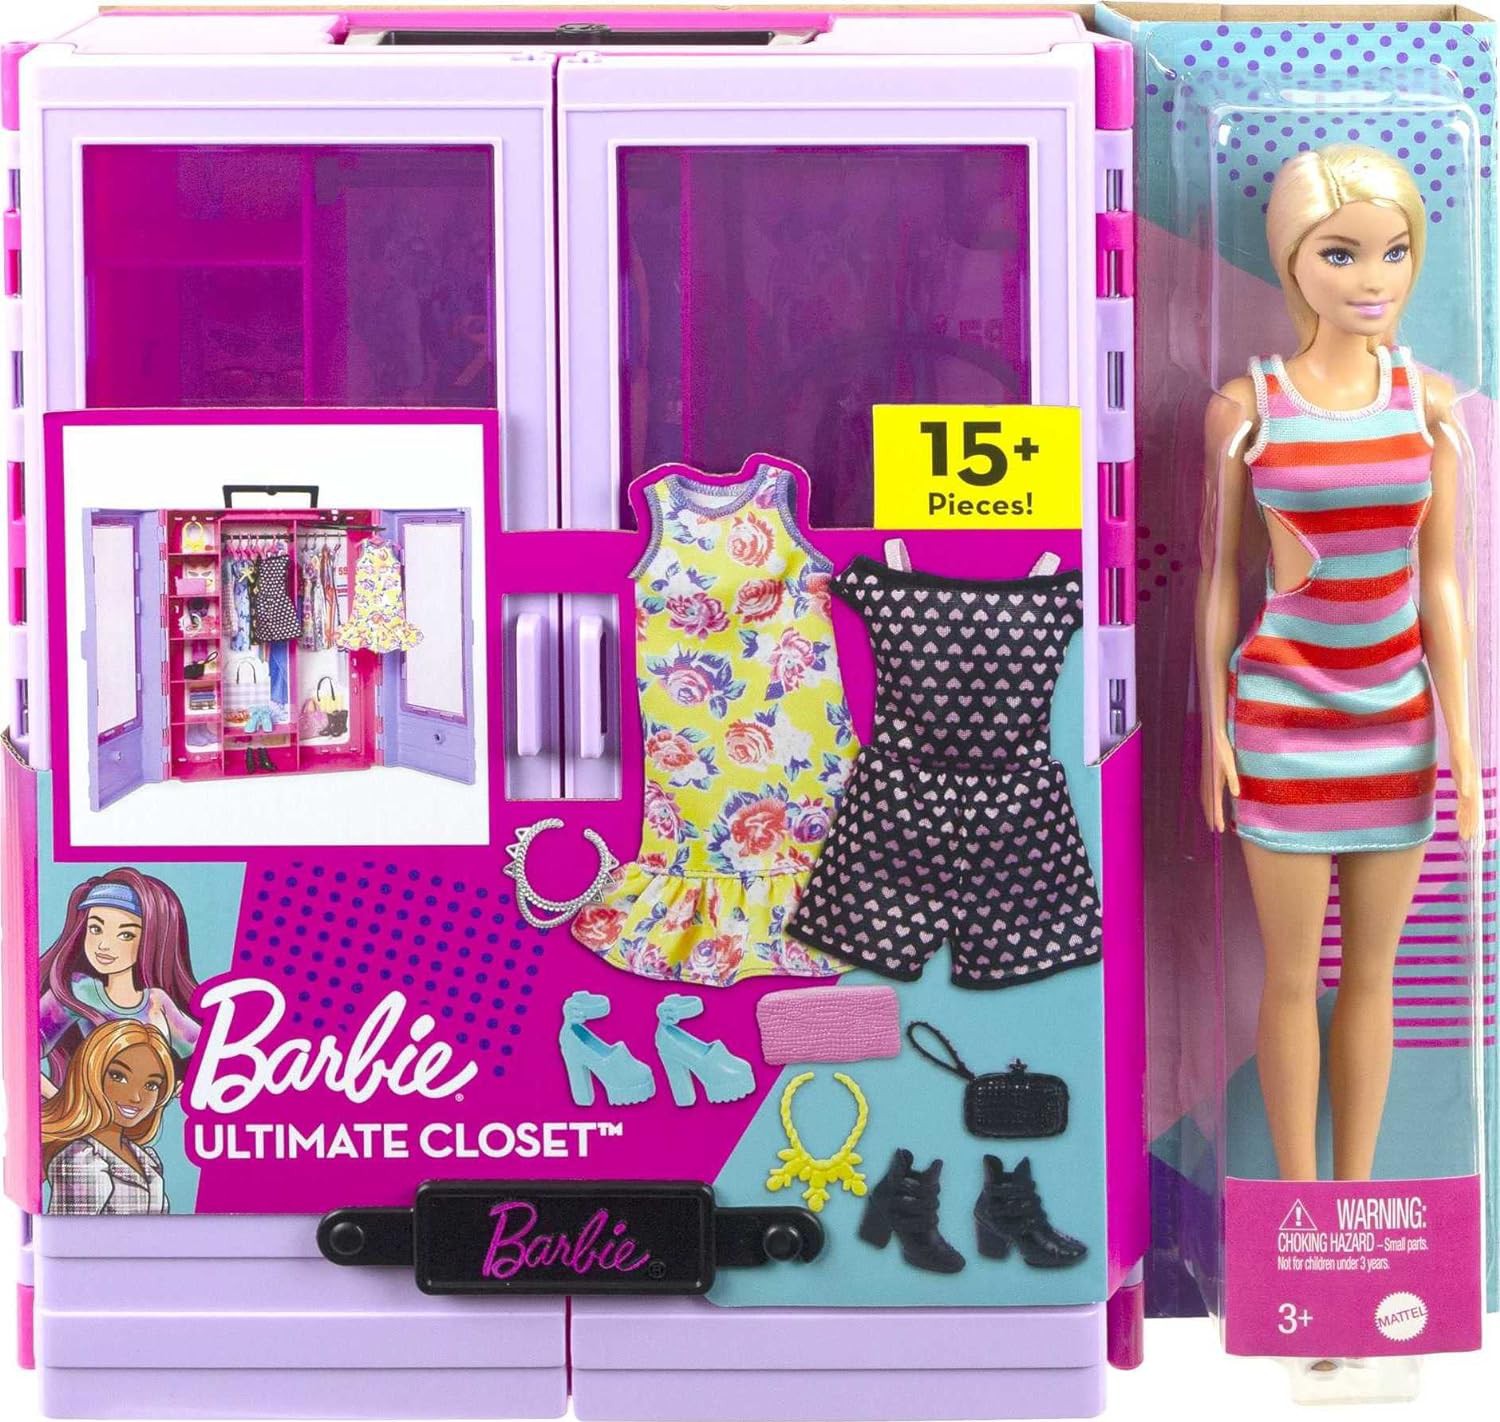 ARMADIO Barbie Armadio Sogno CON BAMBOLA e VESTITI Ultimate Closet